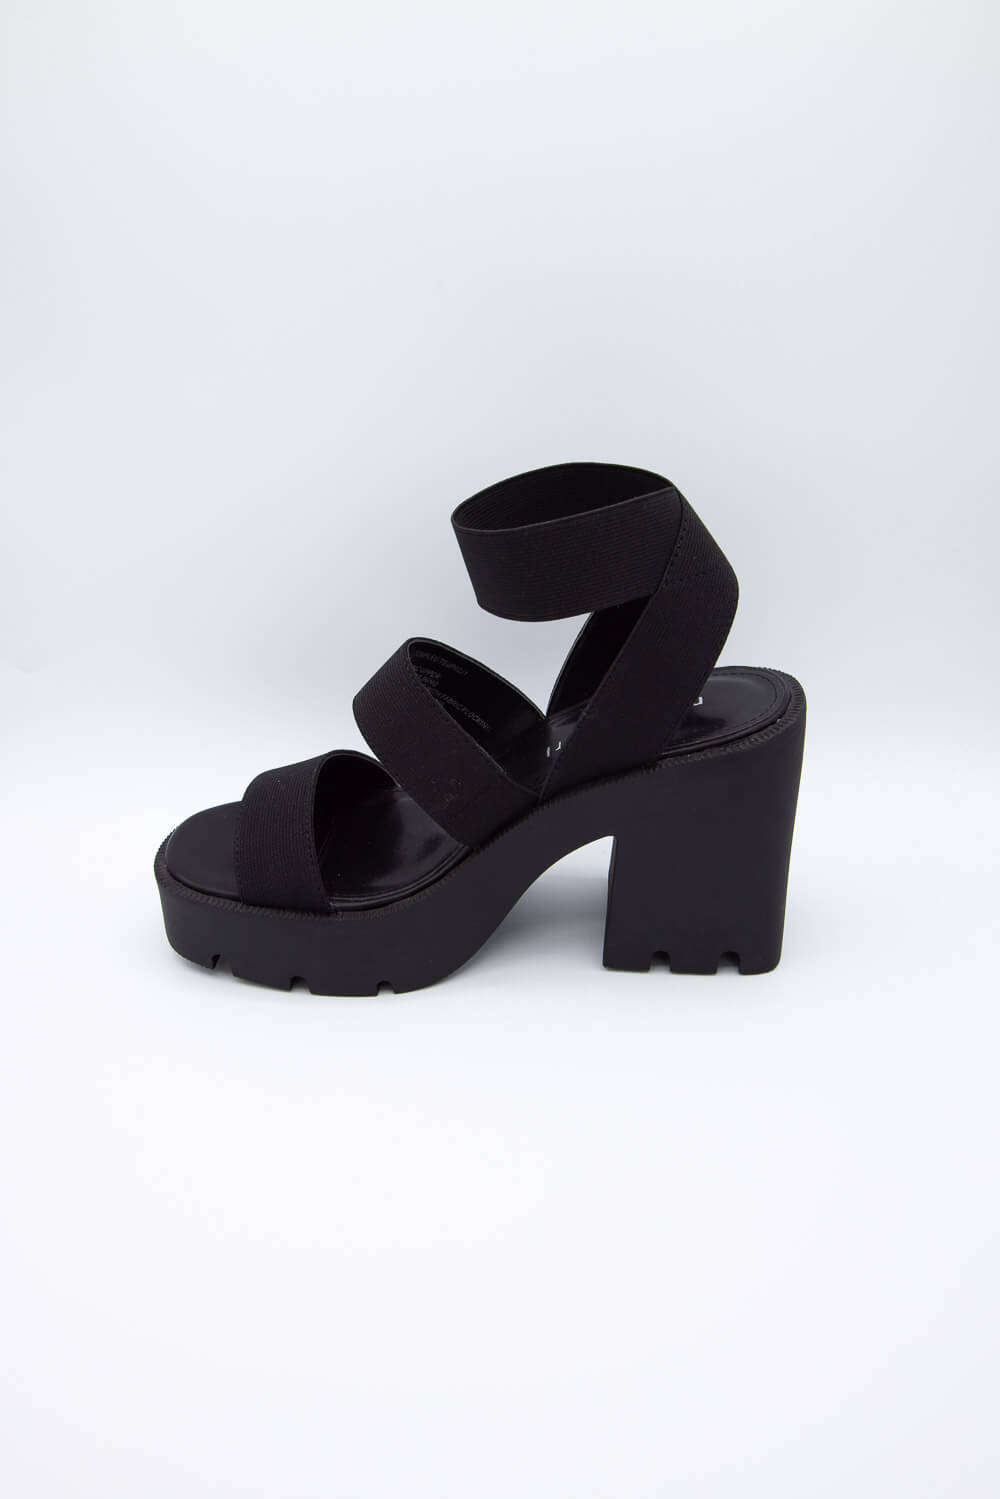 Madden Girl, Shoes, Black Madden Girl Platform Birkenstock Dupe